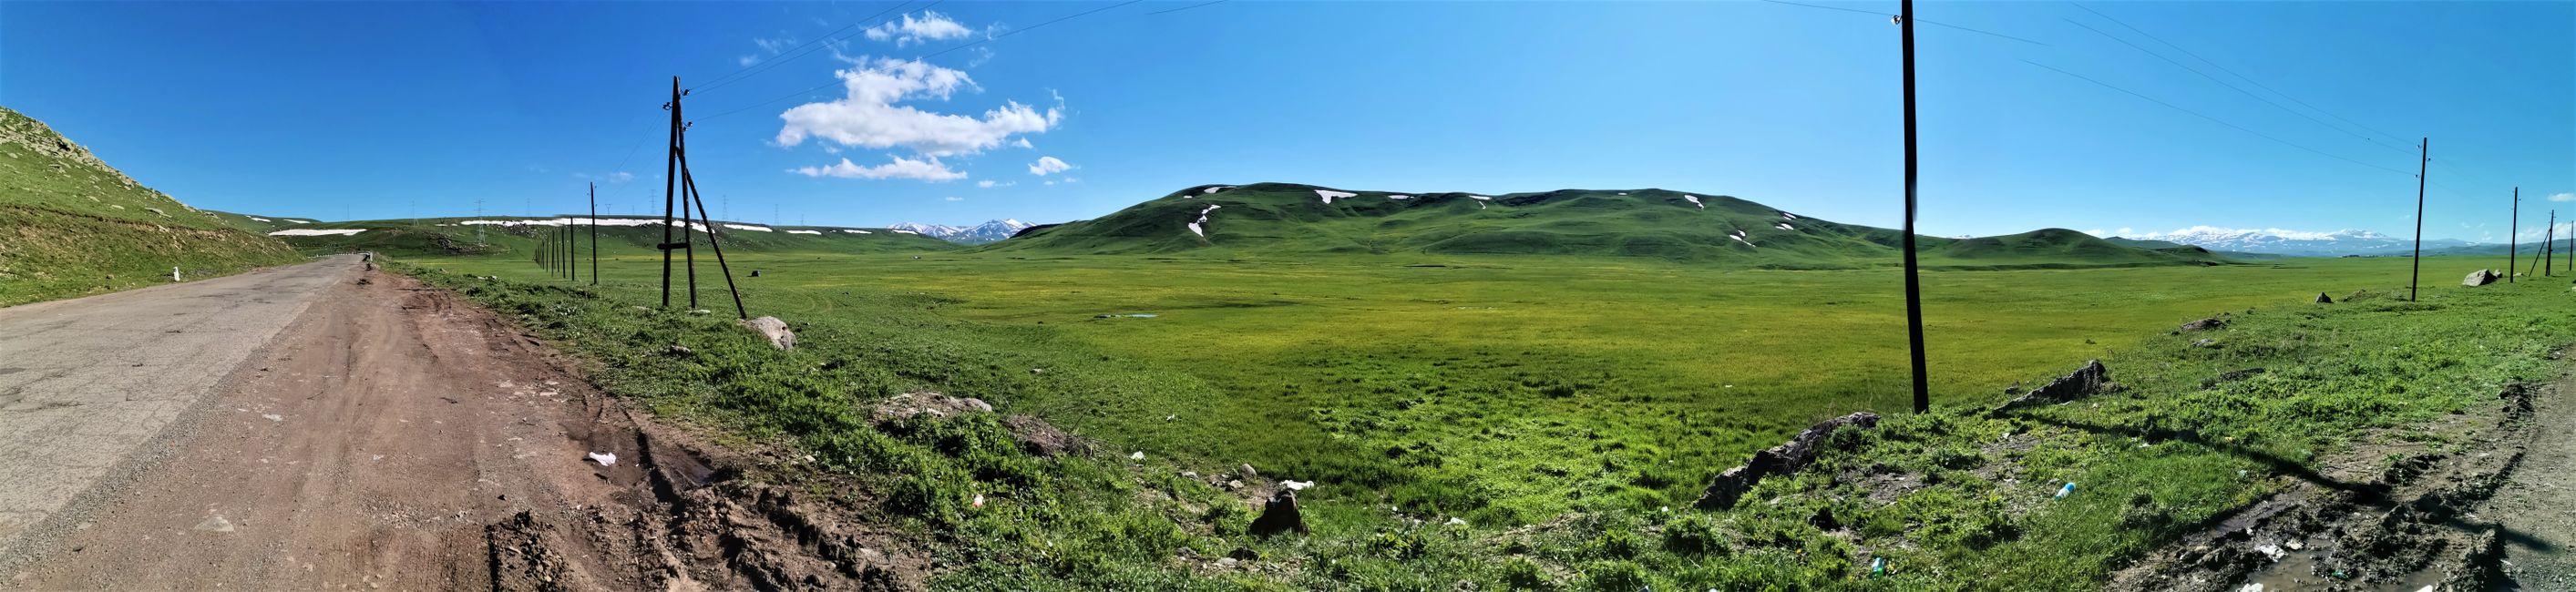 Армен "уулсын нутаг"